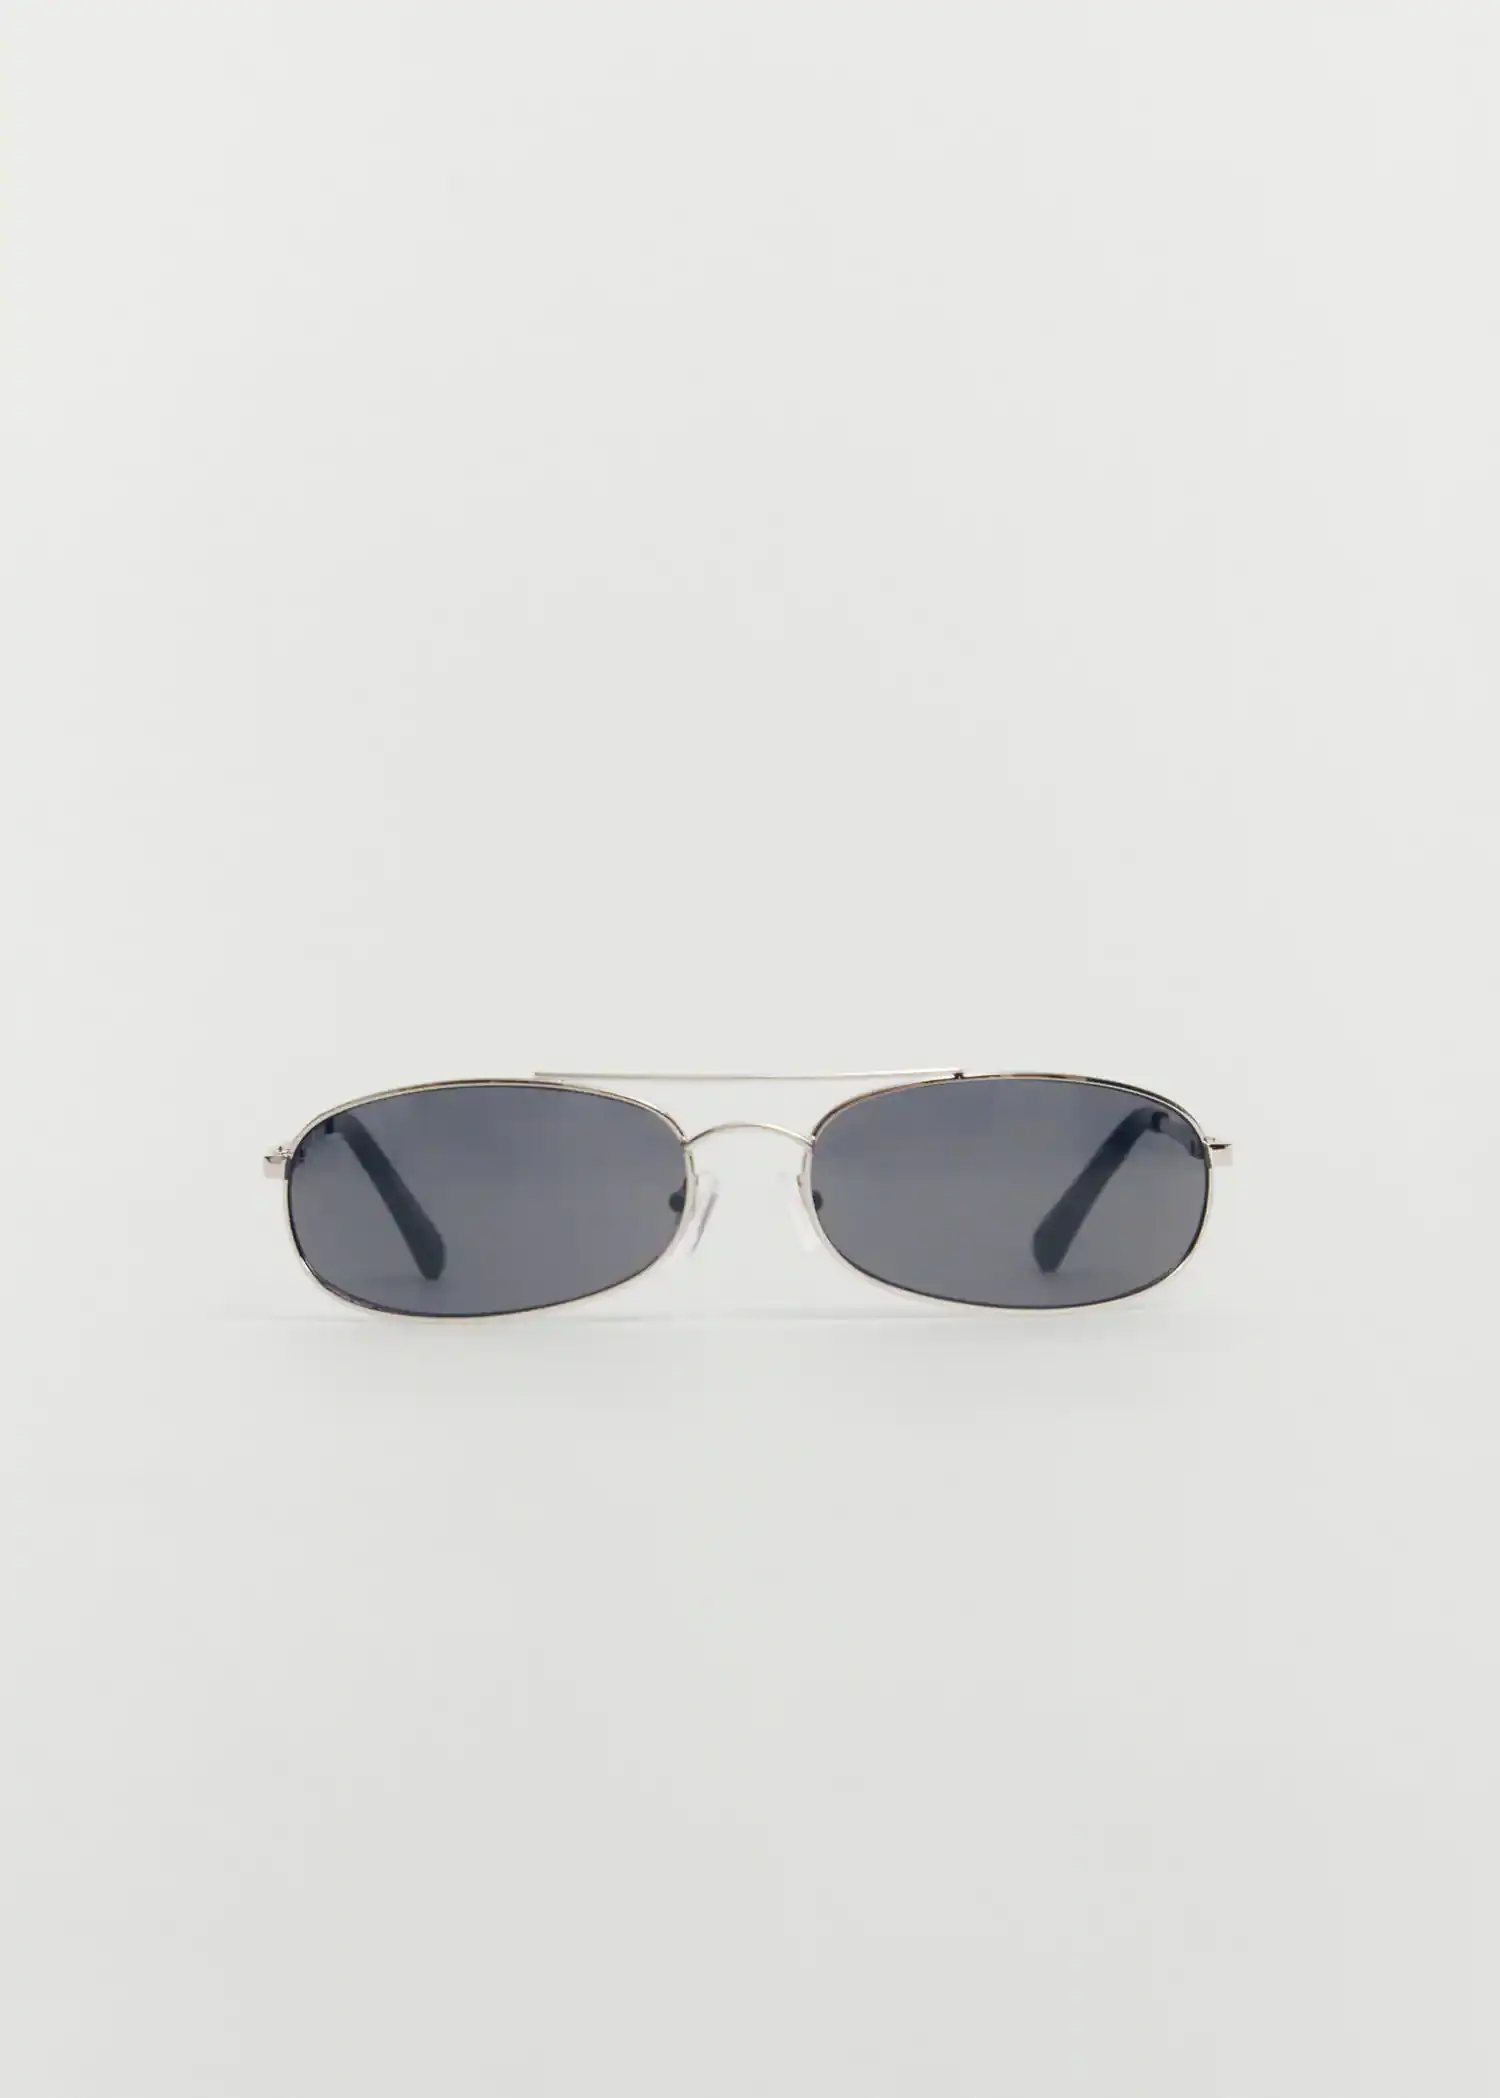 Mango Sonnenbrille mit Metallfassung. 2